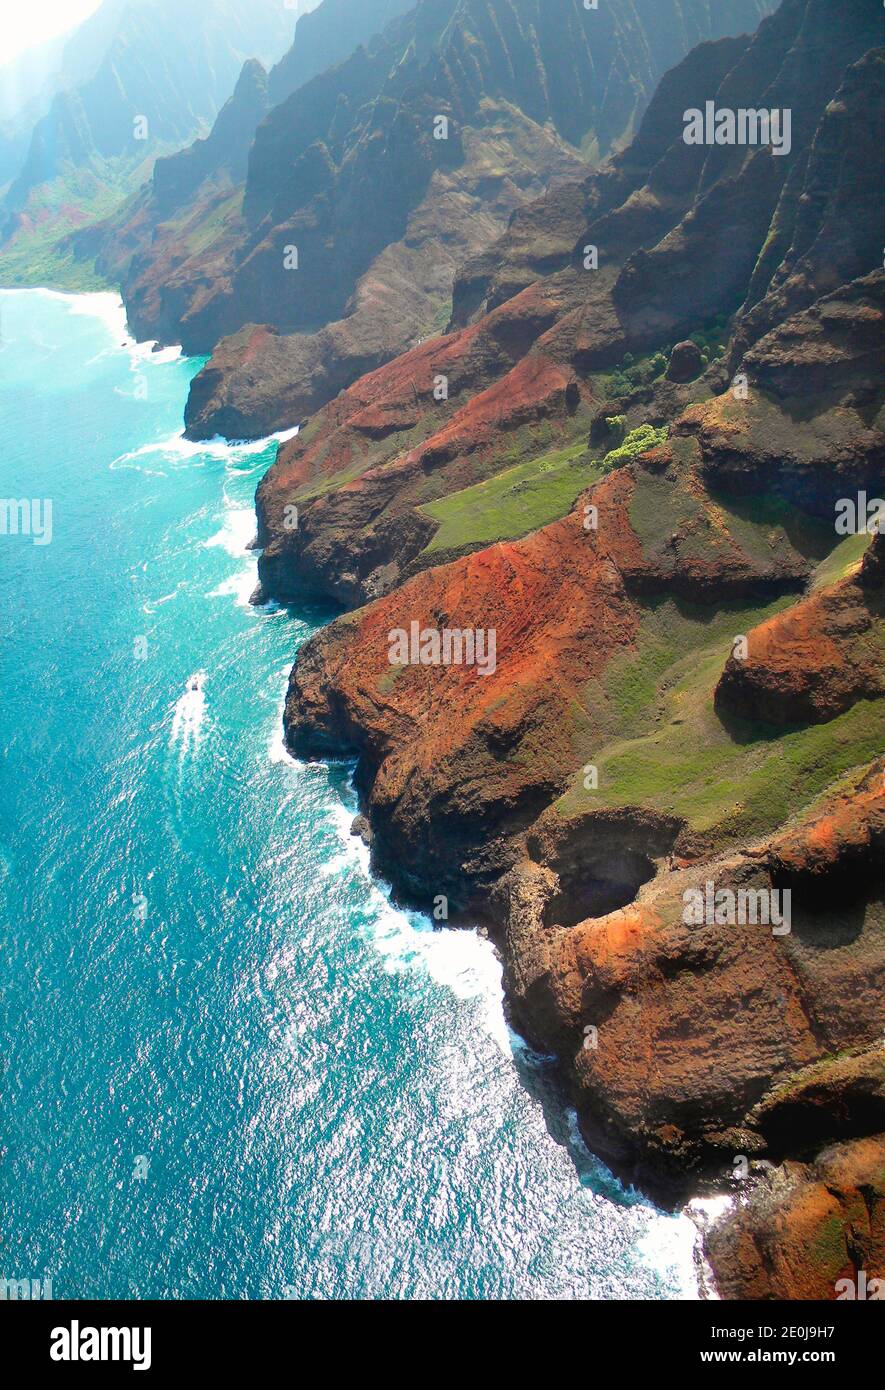 Una delle coste più spettacolari del mondo. Un tetto di grotta di mare crollato può essere visto in primo piano. La barca trimarana dà scala. Foto Stock